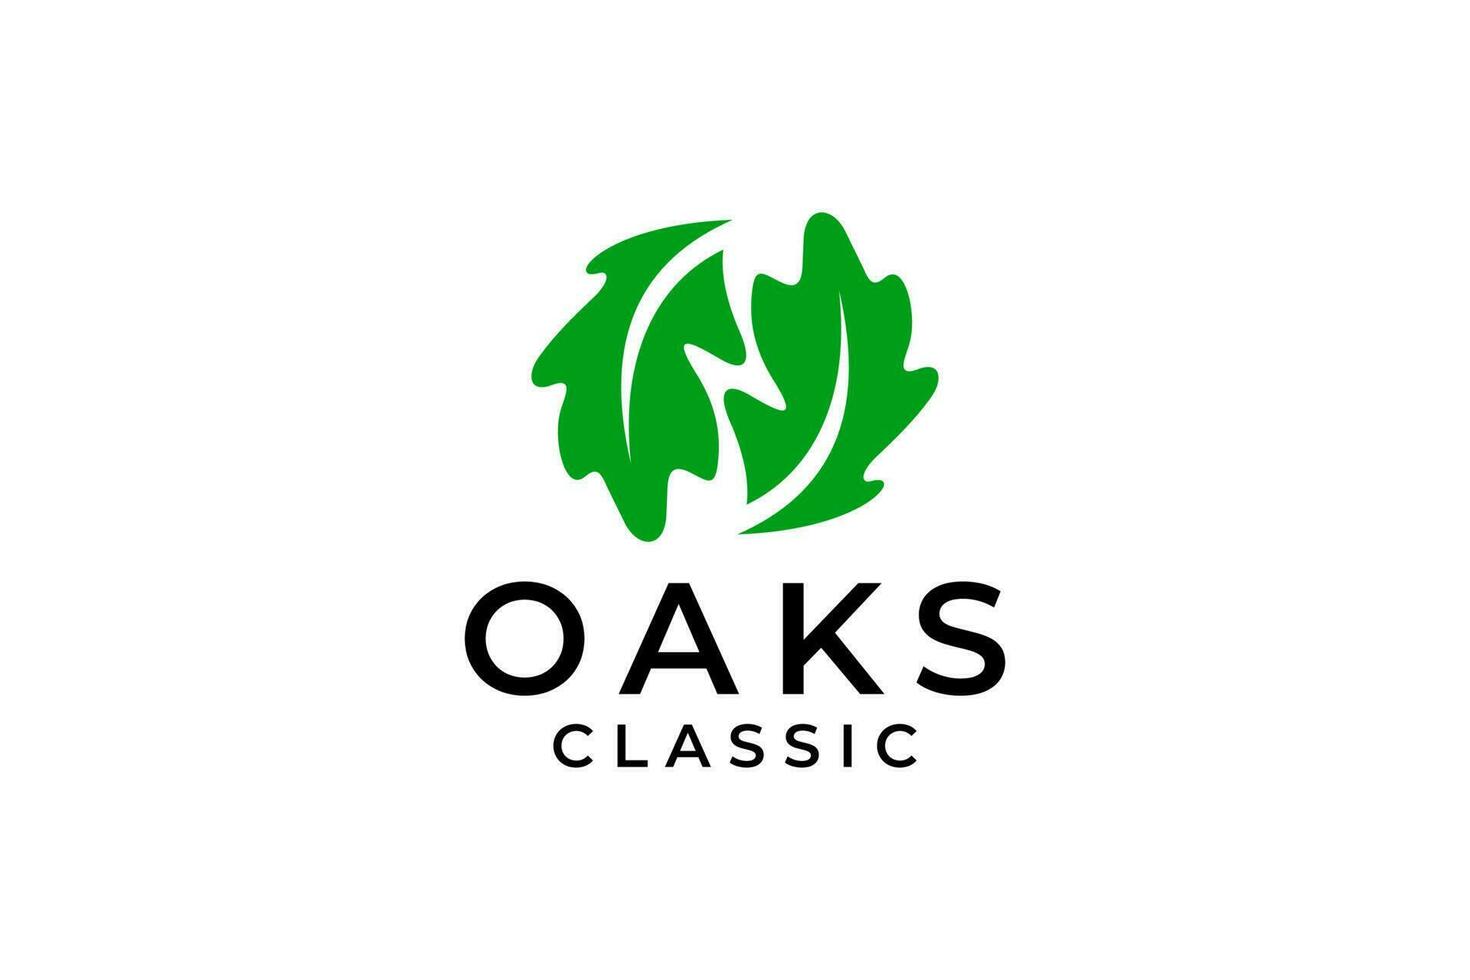 Oak leaf logo illustration. Vector silhouette of a leaf.